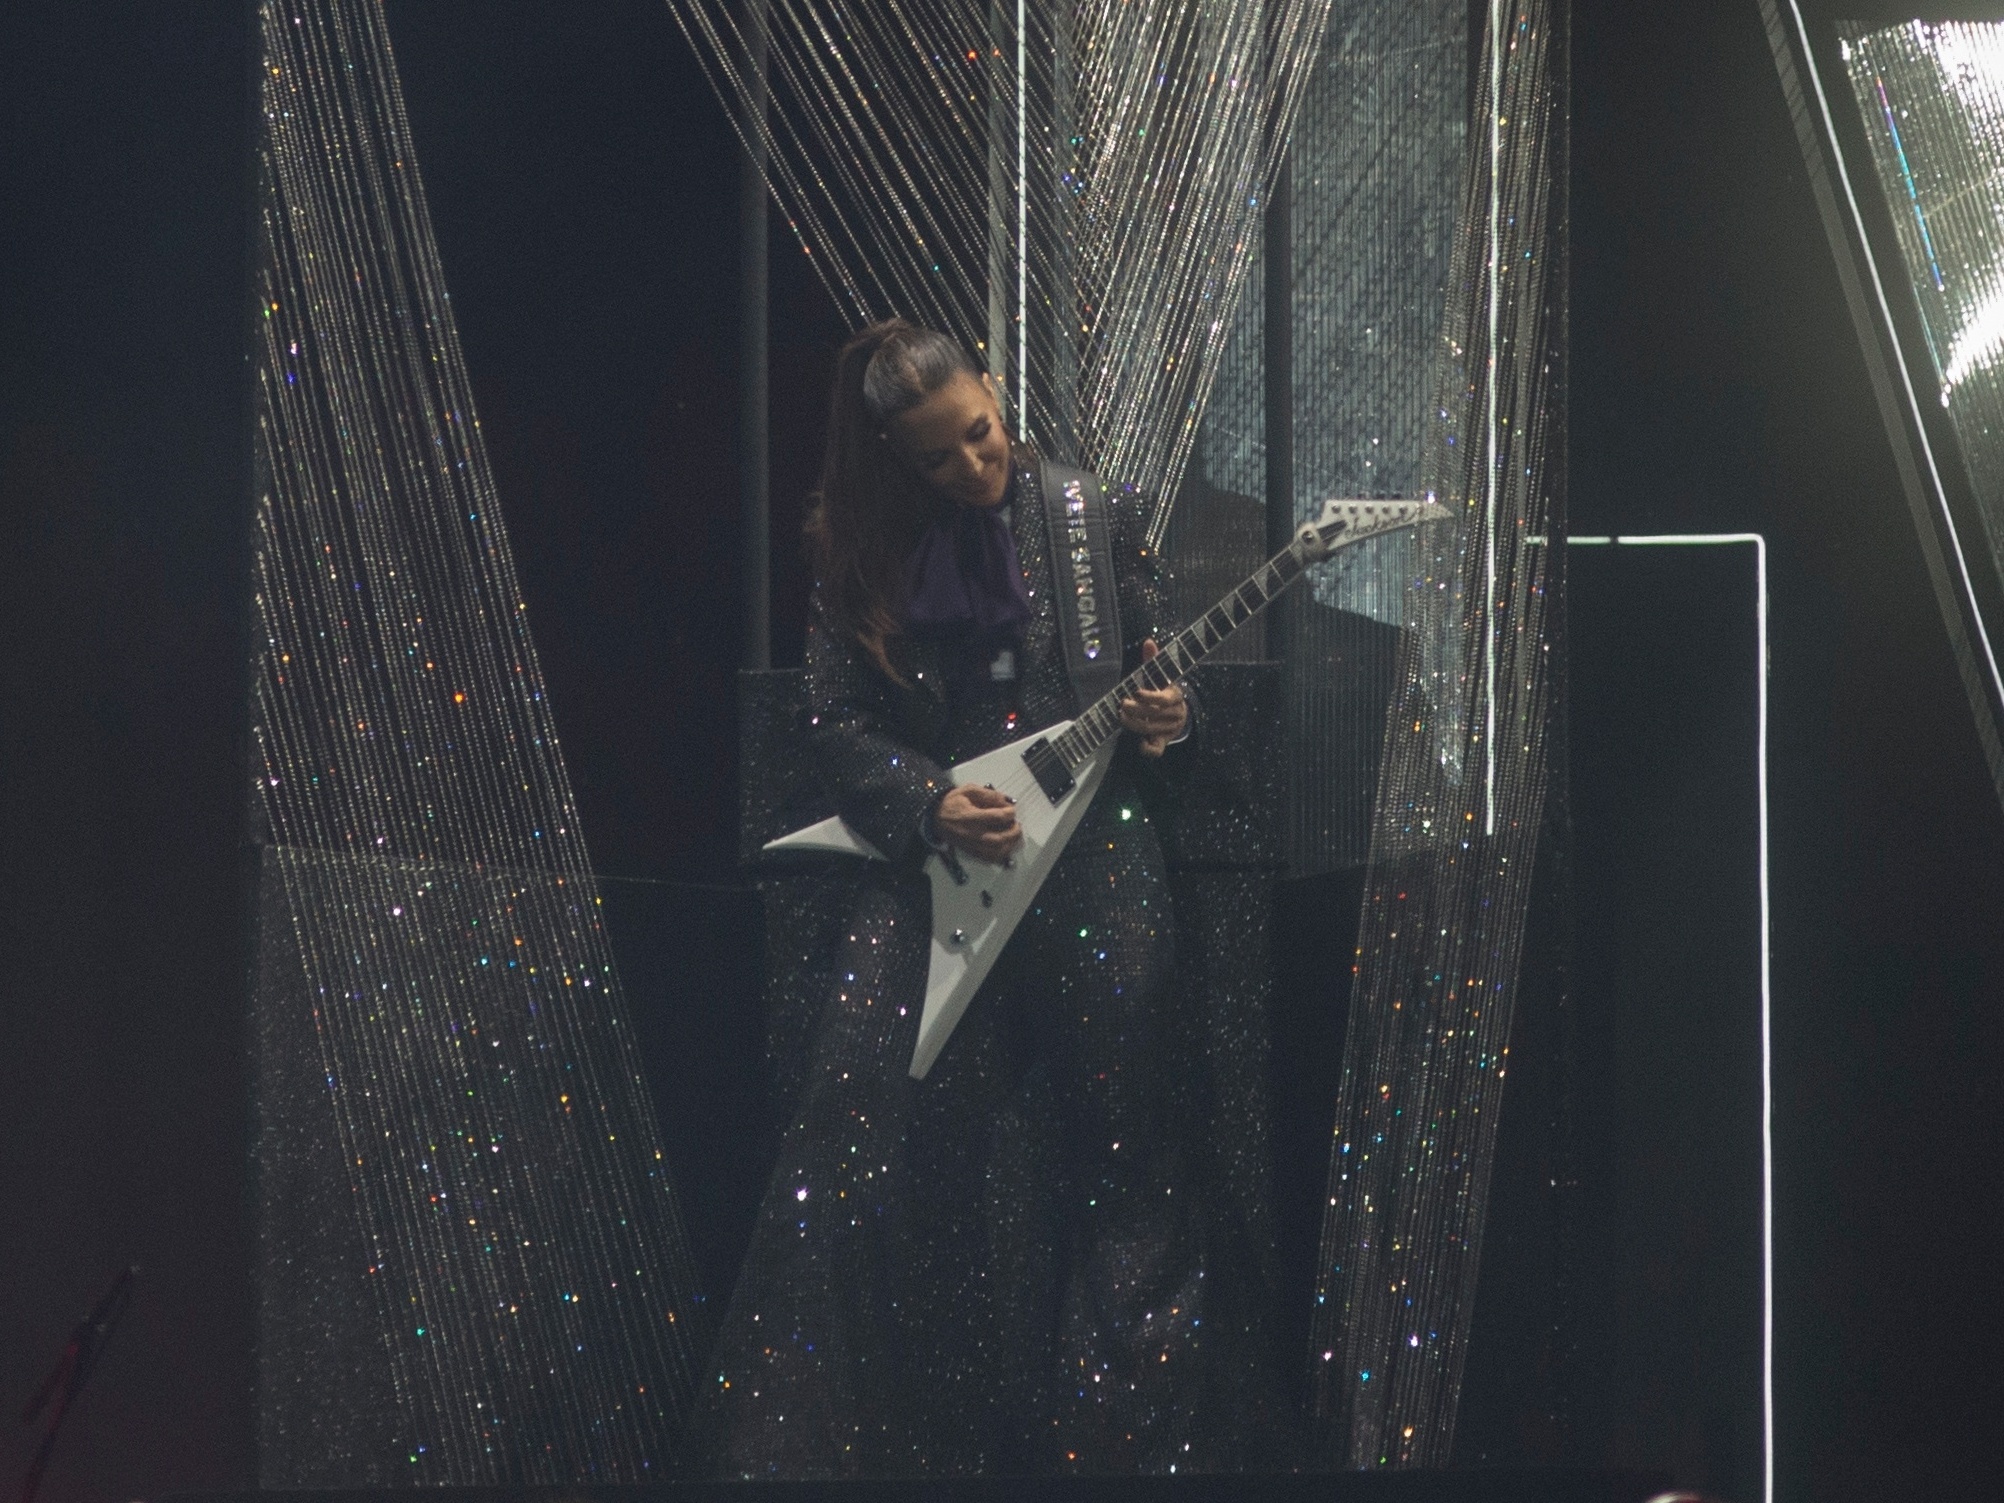 Músico de rock toca música no palco guitarrista roqueiro se